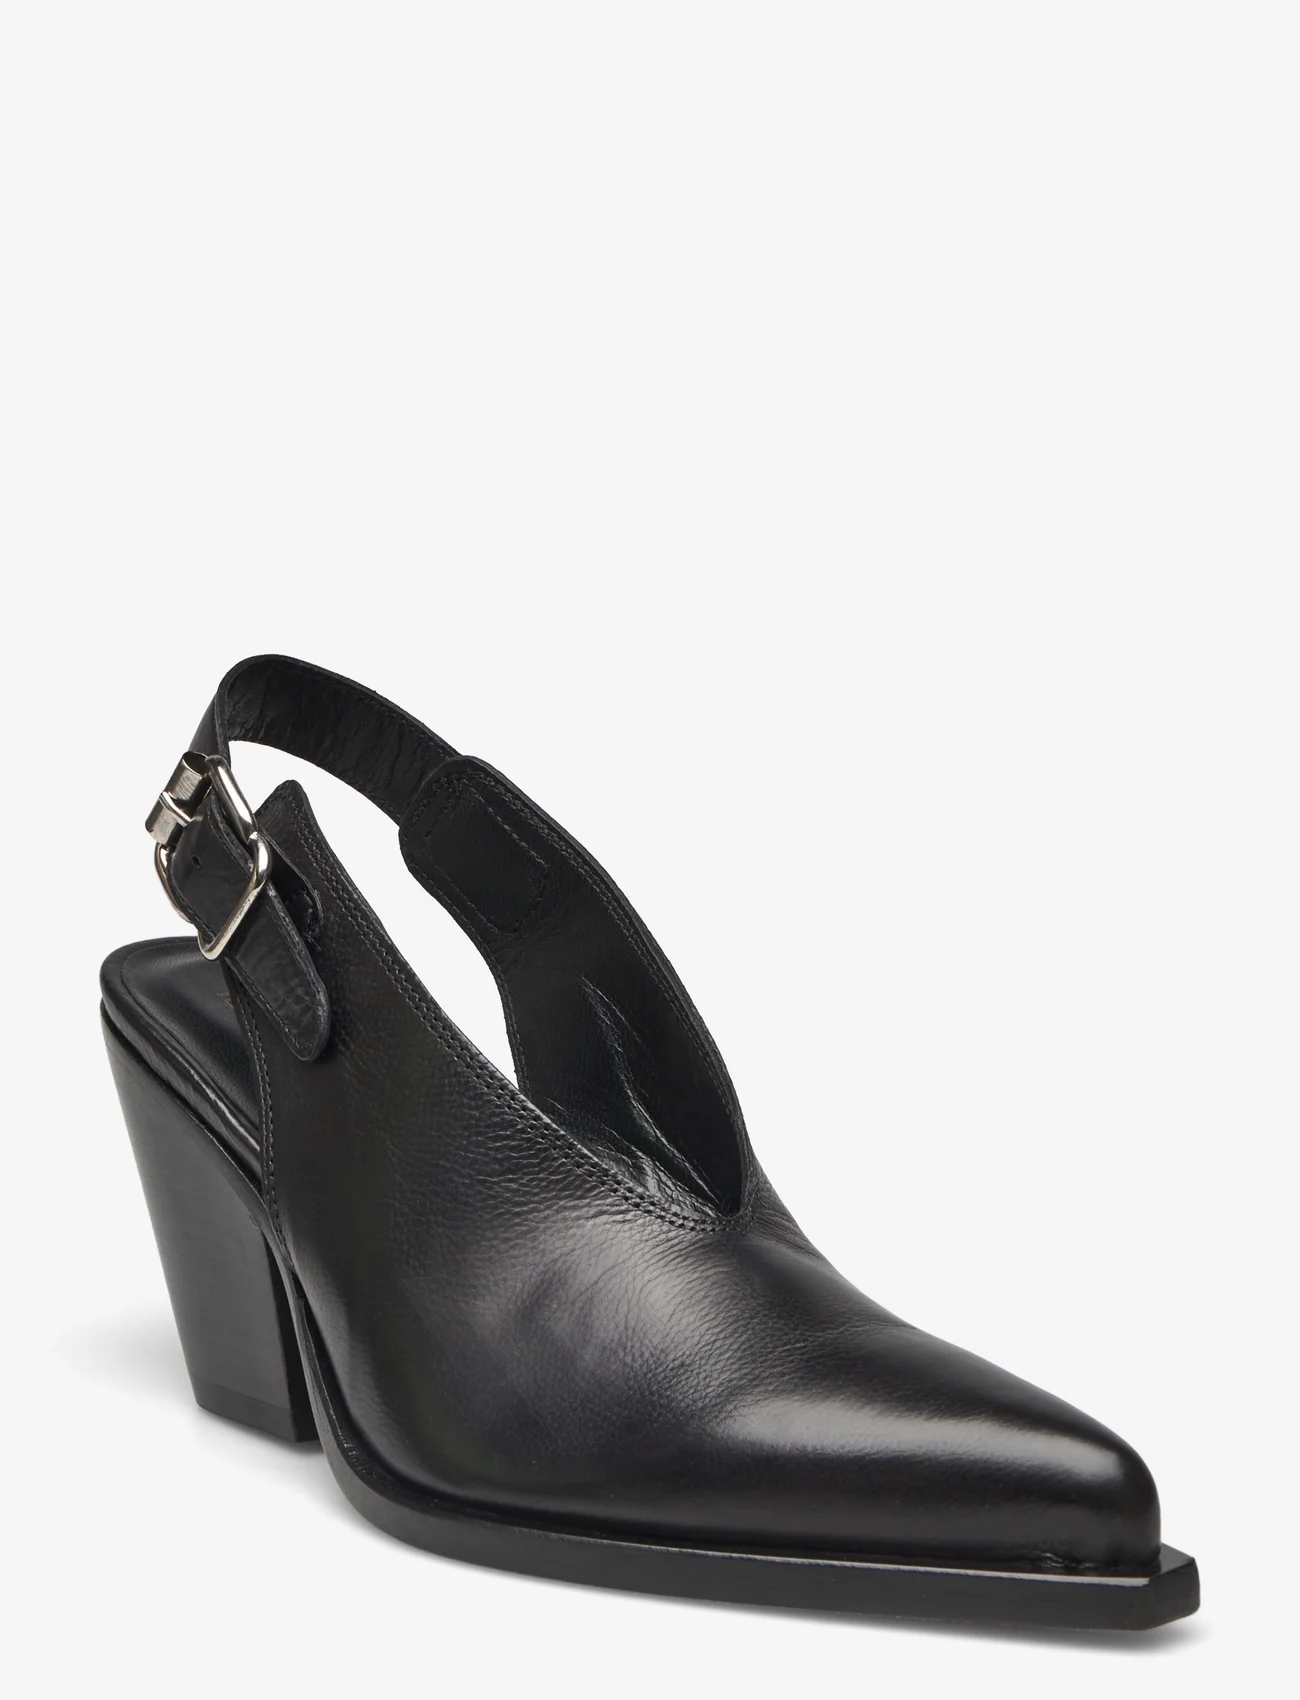 Laura Bellariva - shoes - slingbacks med hæl - black - 0